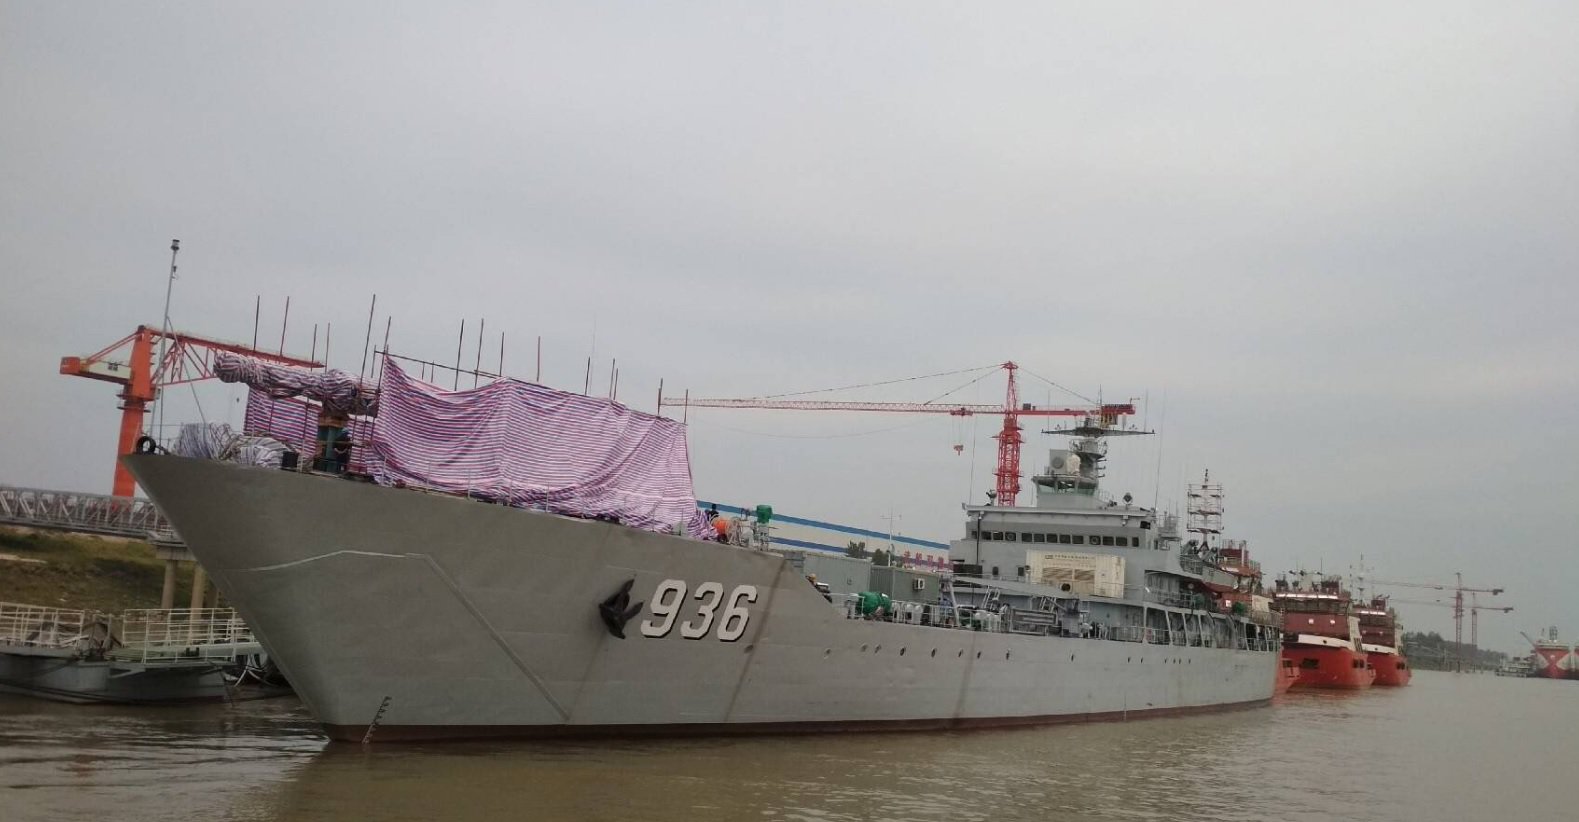 Chiny przygotowuje się do morskich badań railgun